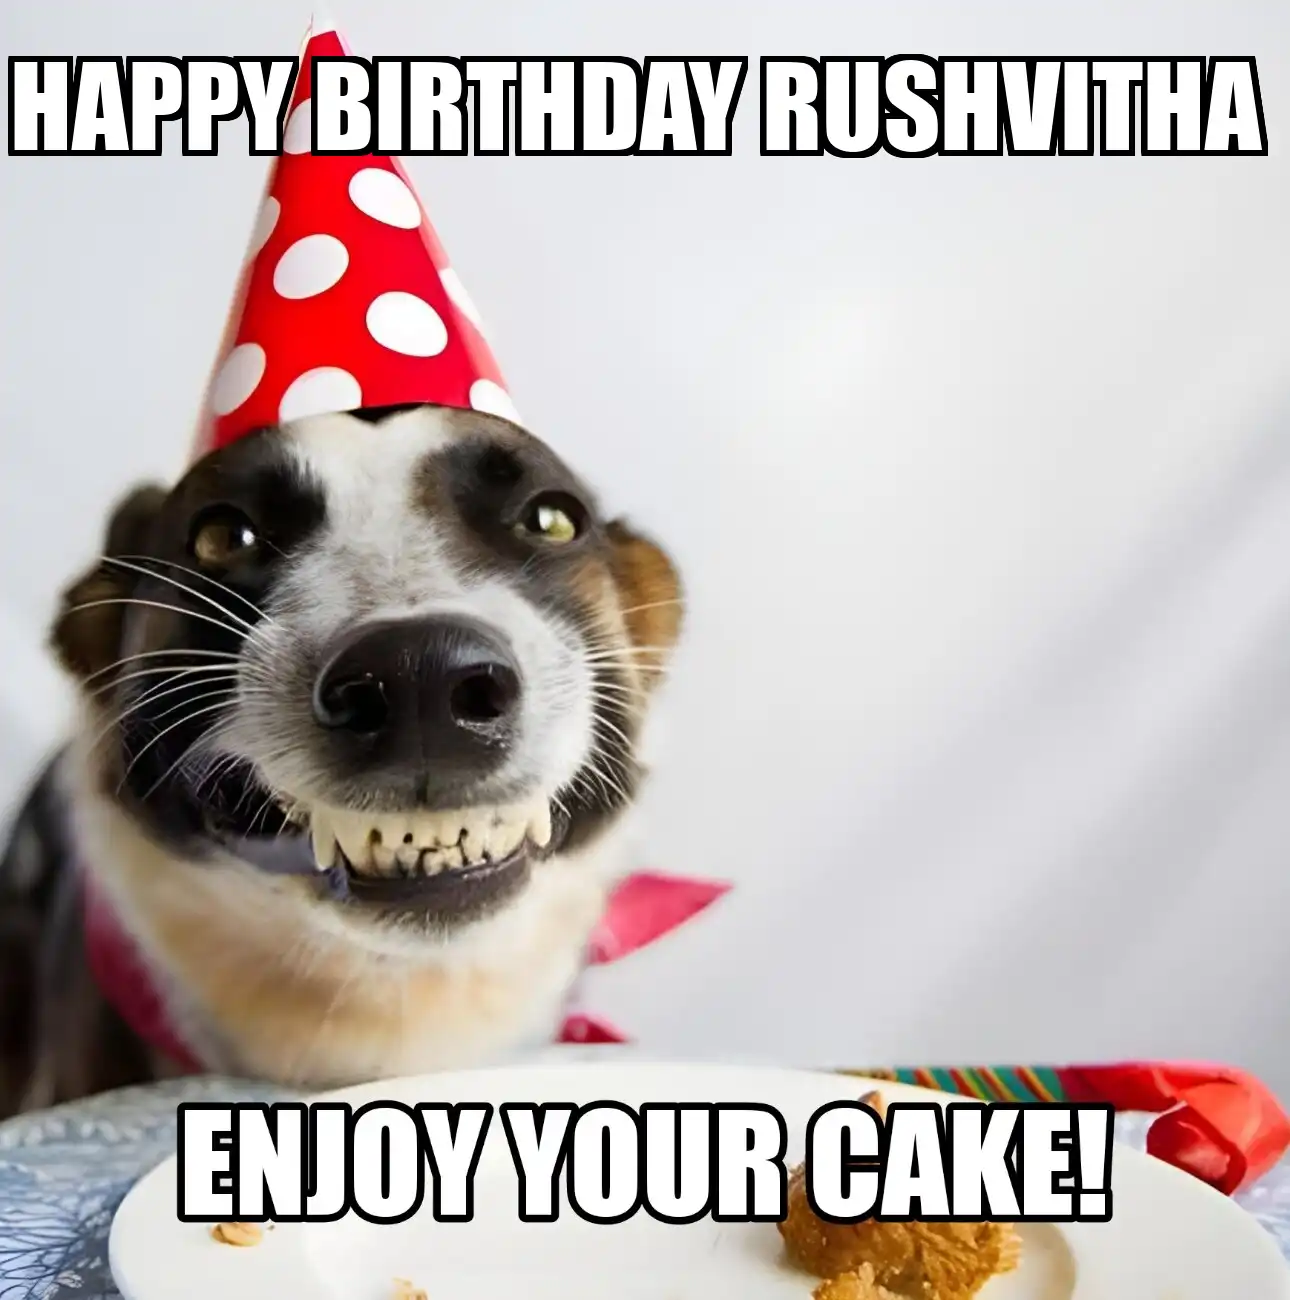 Happy Birthday Rushvitha Enjoy Your Cake Dog Meme